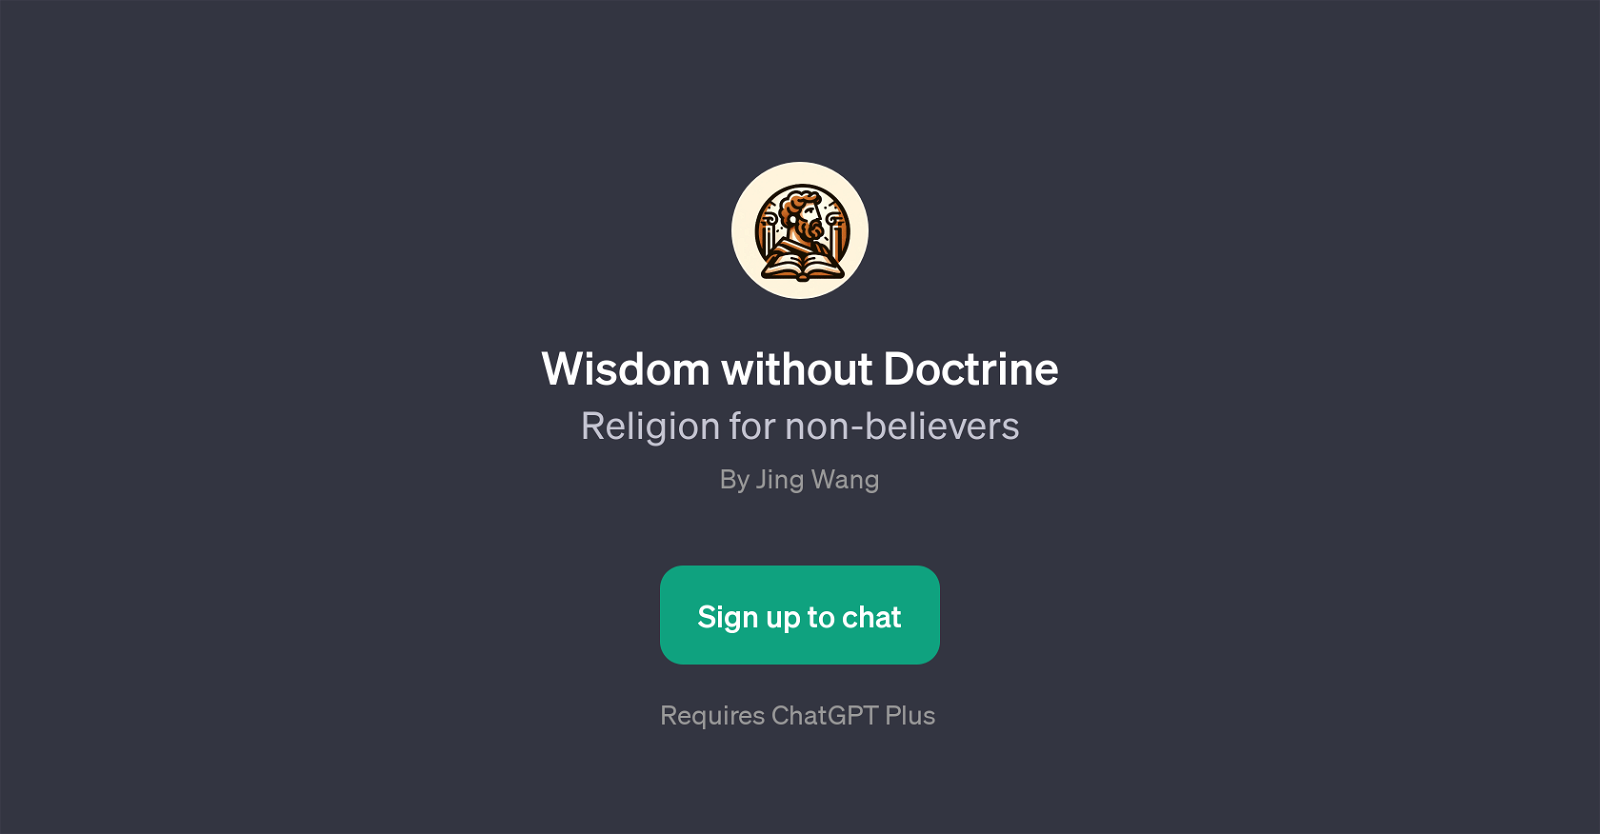 Wisdom without Doctrine website